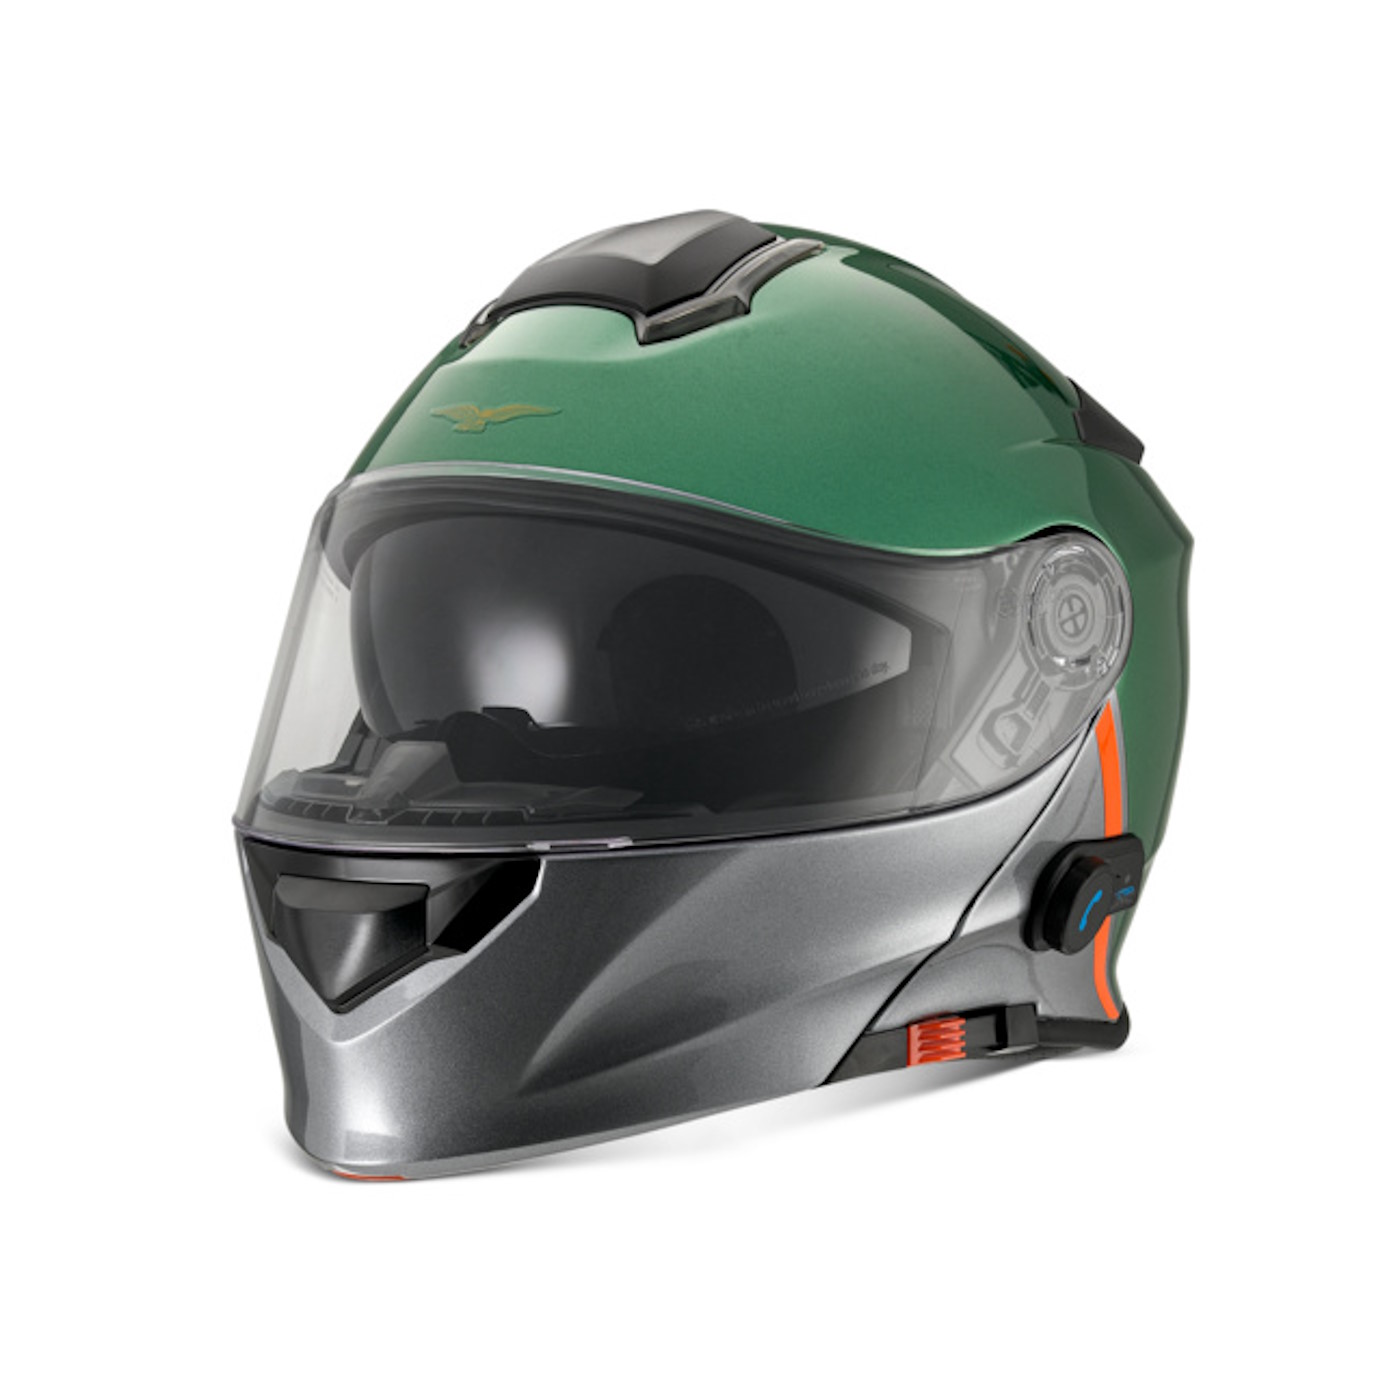 Accessoires de moto Frame End Caps Cadre Hole Cover Caps Plug Décoratif  pour Moto Guzzi V85tt V85 Tt 2019 2020 2021 2022